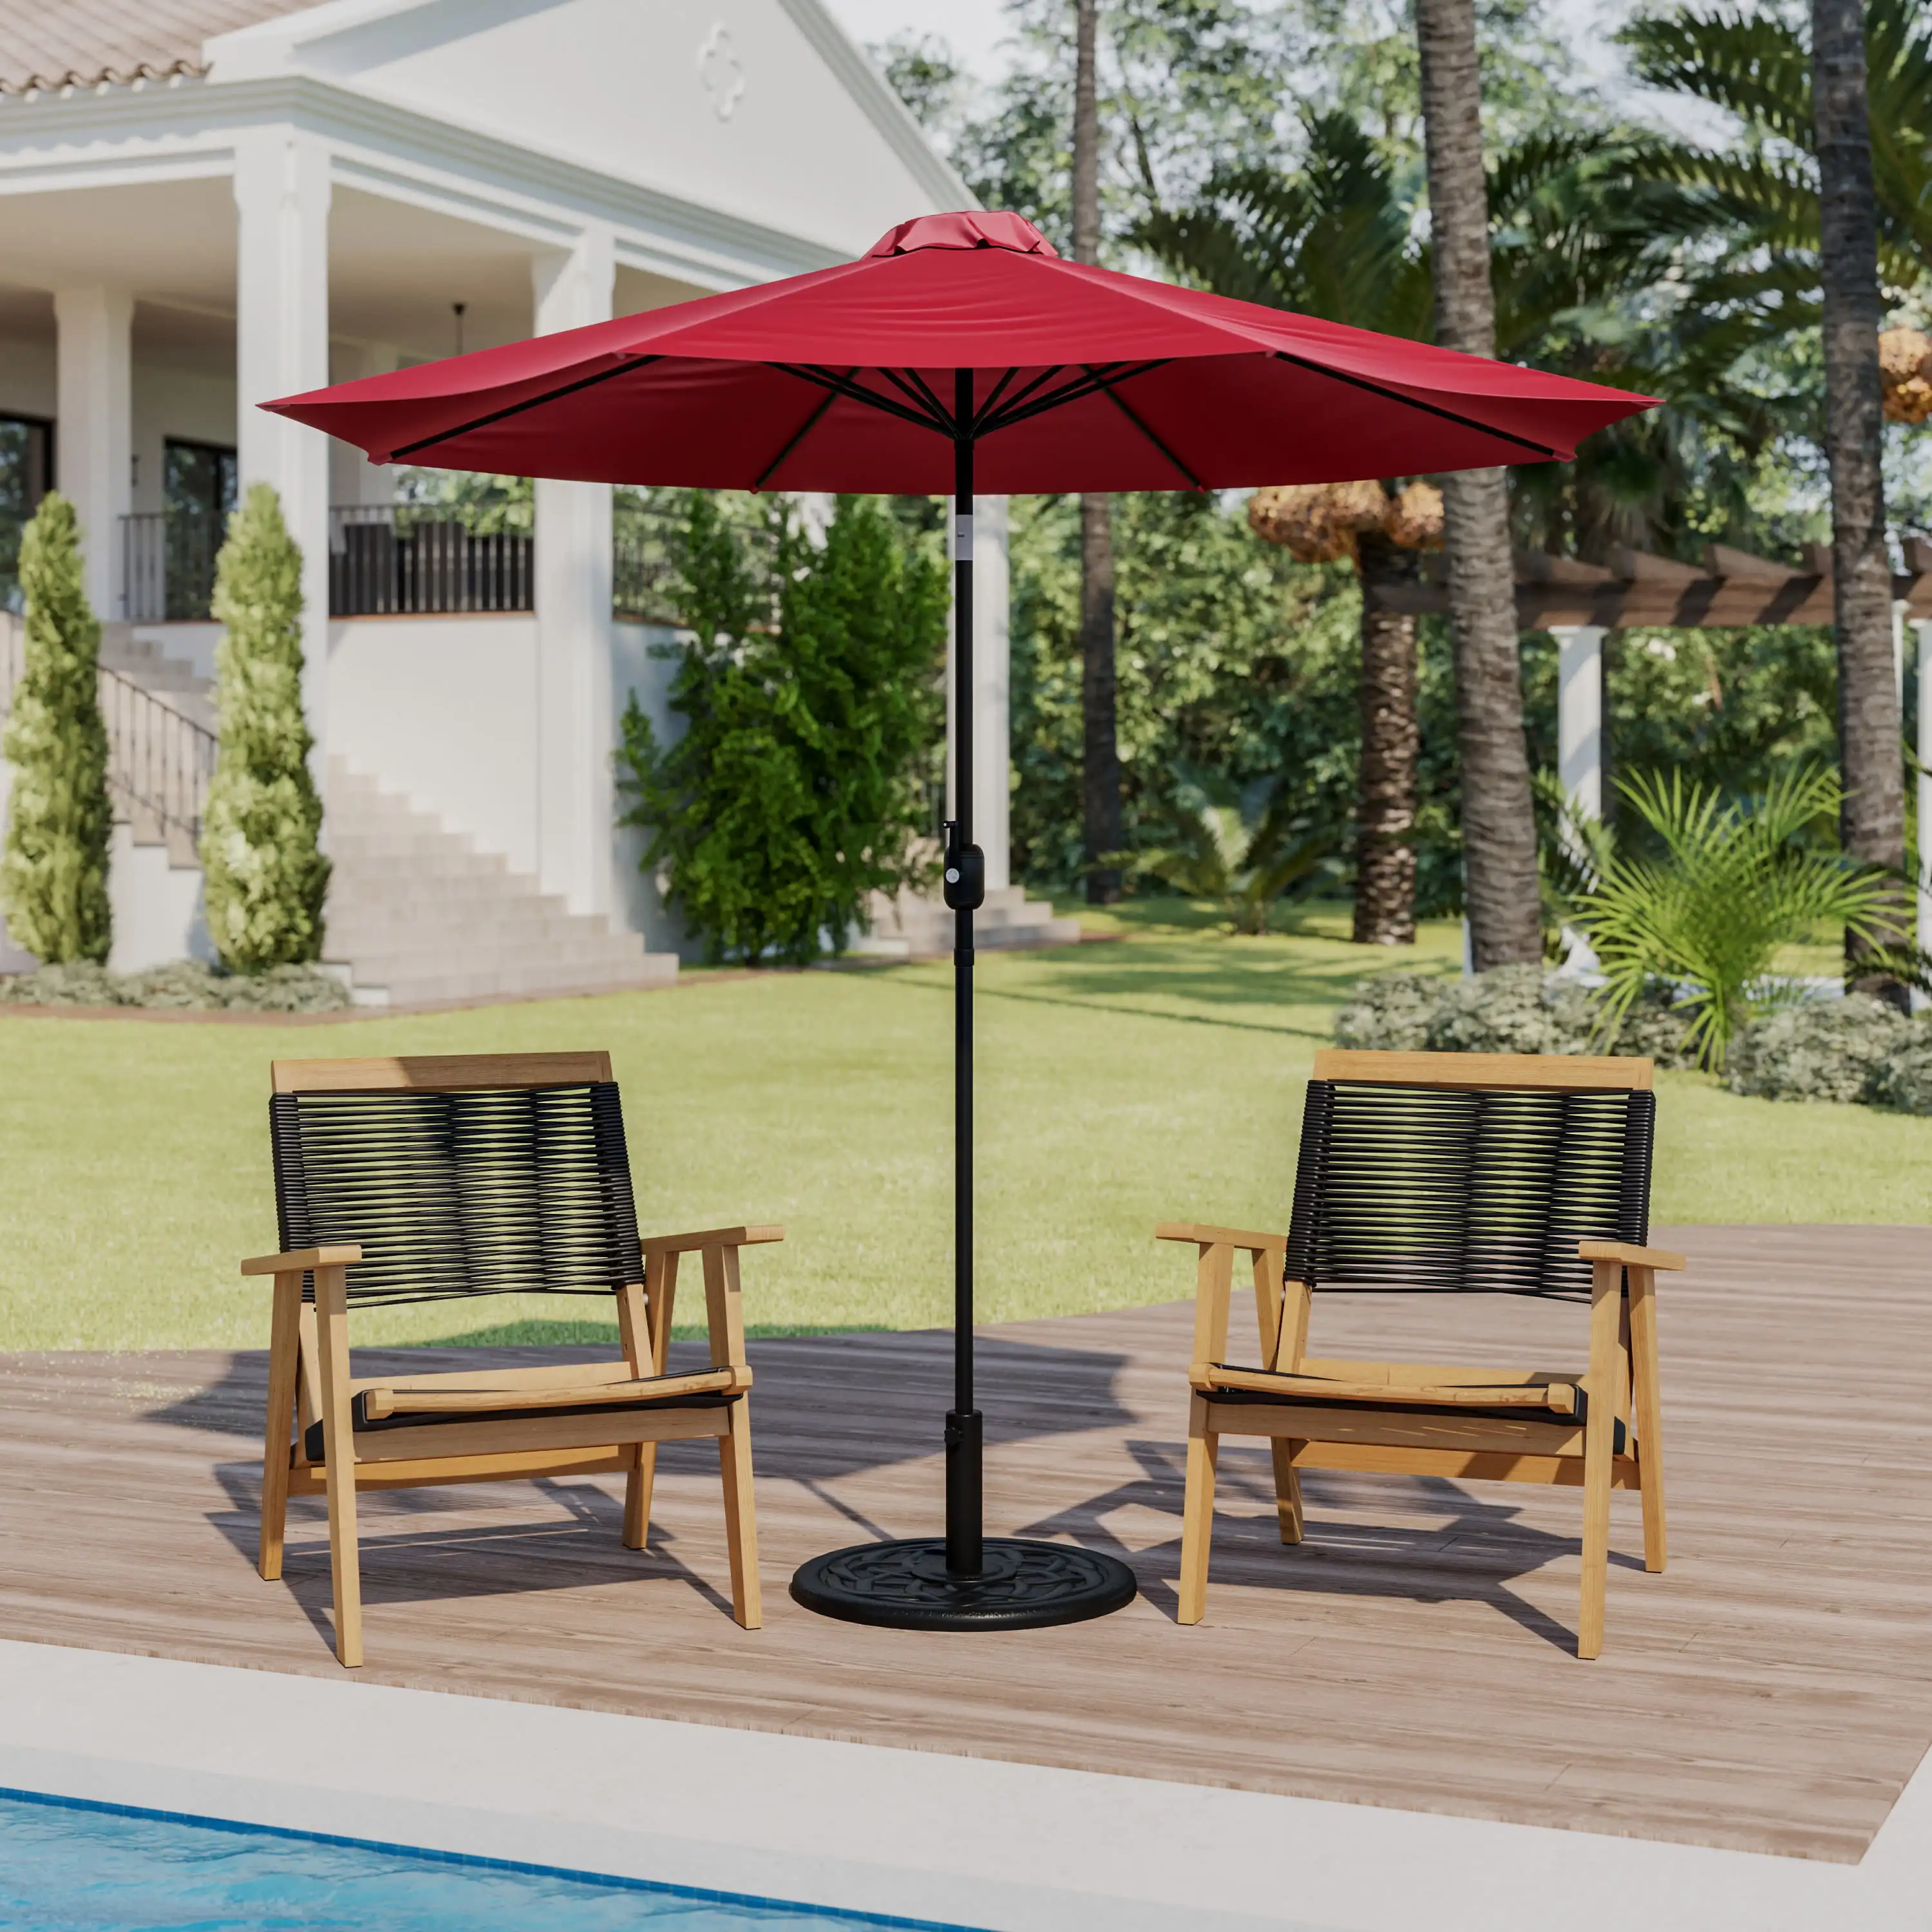 

Флэш-мебель Kona Красный 9 футов Круглый Зонт с функцией кривошипа и наклона и стоячим зонтиком